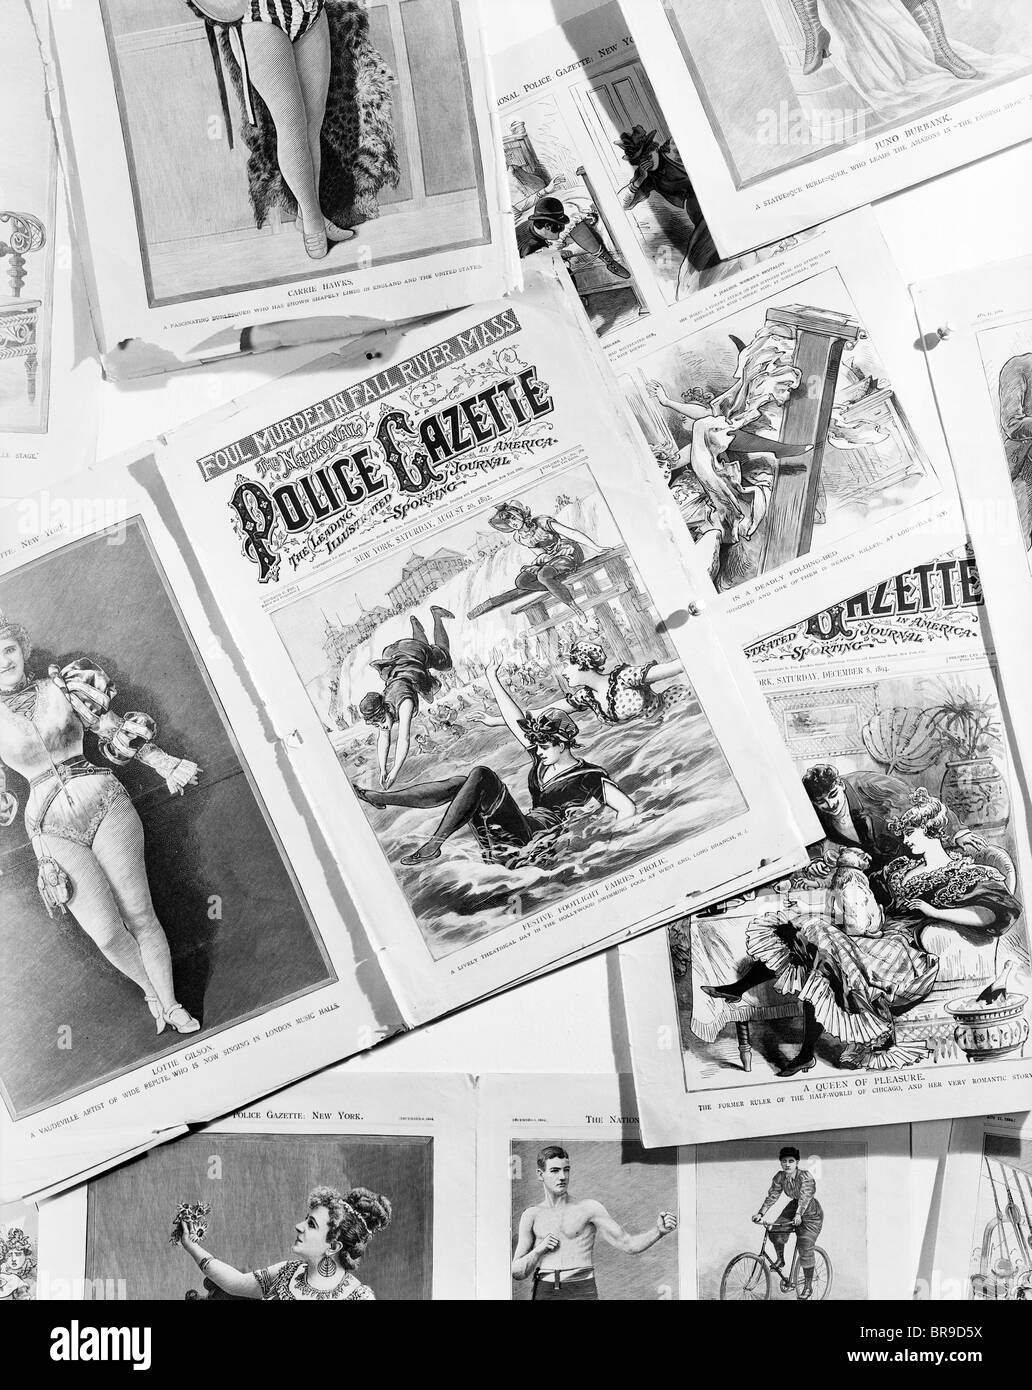 1890 MONTAGE DES PAGES DE LA GAZETTE DE LA POLICE montrant le vaudeville burlesque et des personnalités sportives et accessoires Banque D'Images